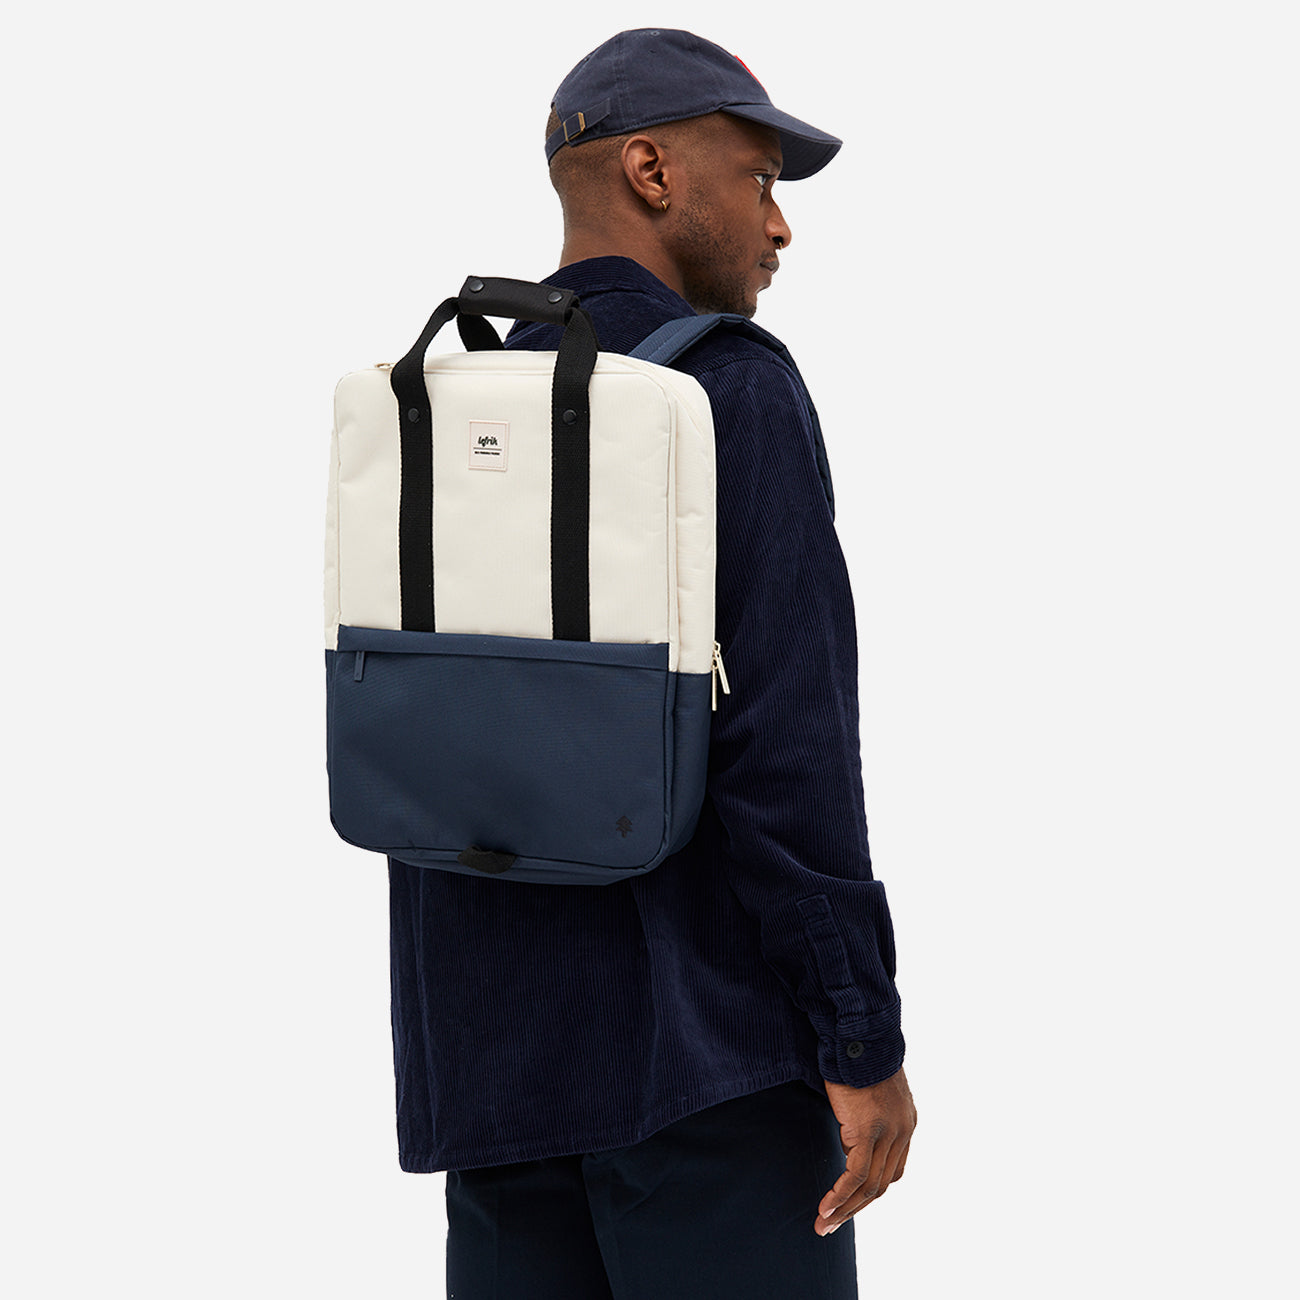 Homme portant un sac à dos urbain écologique, vue arrière